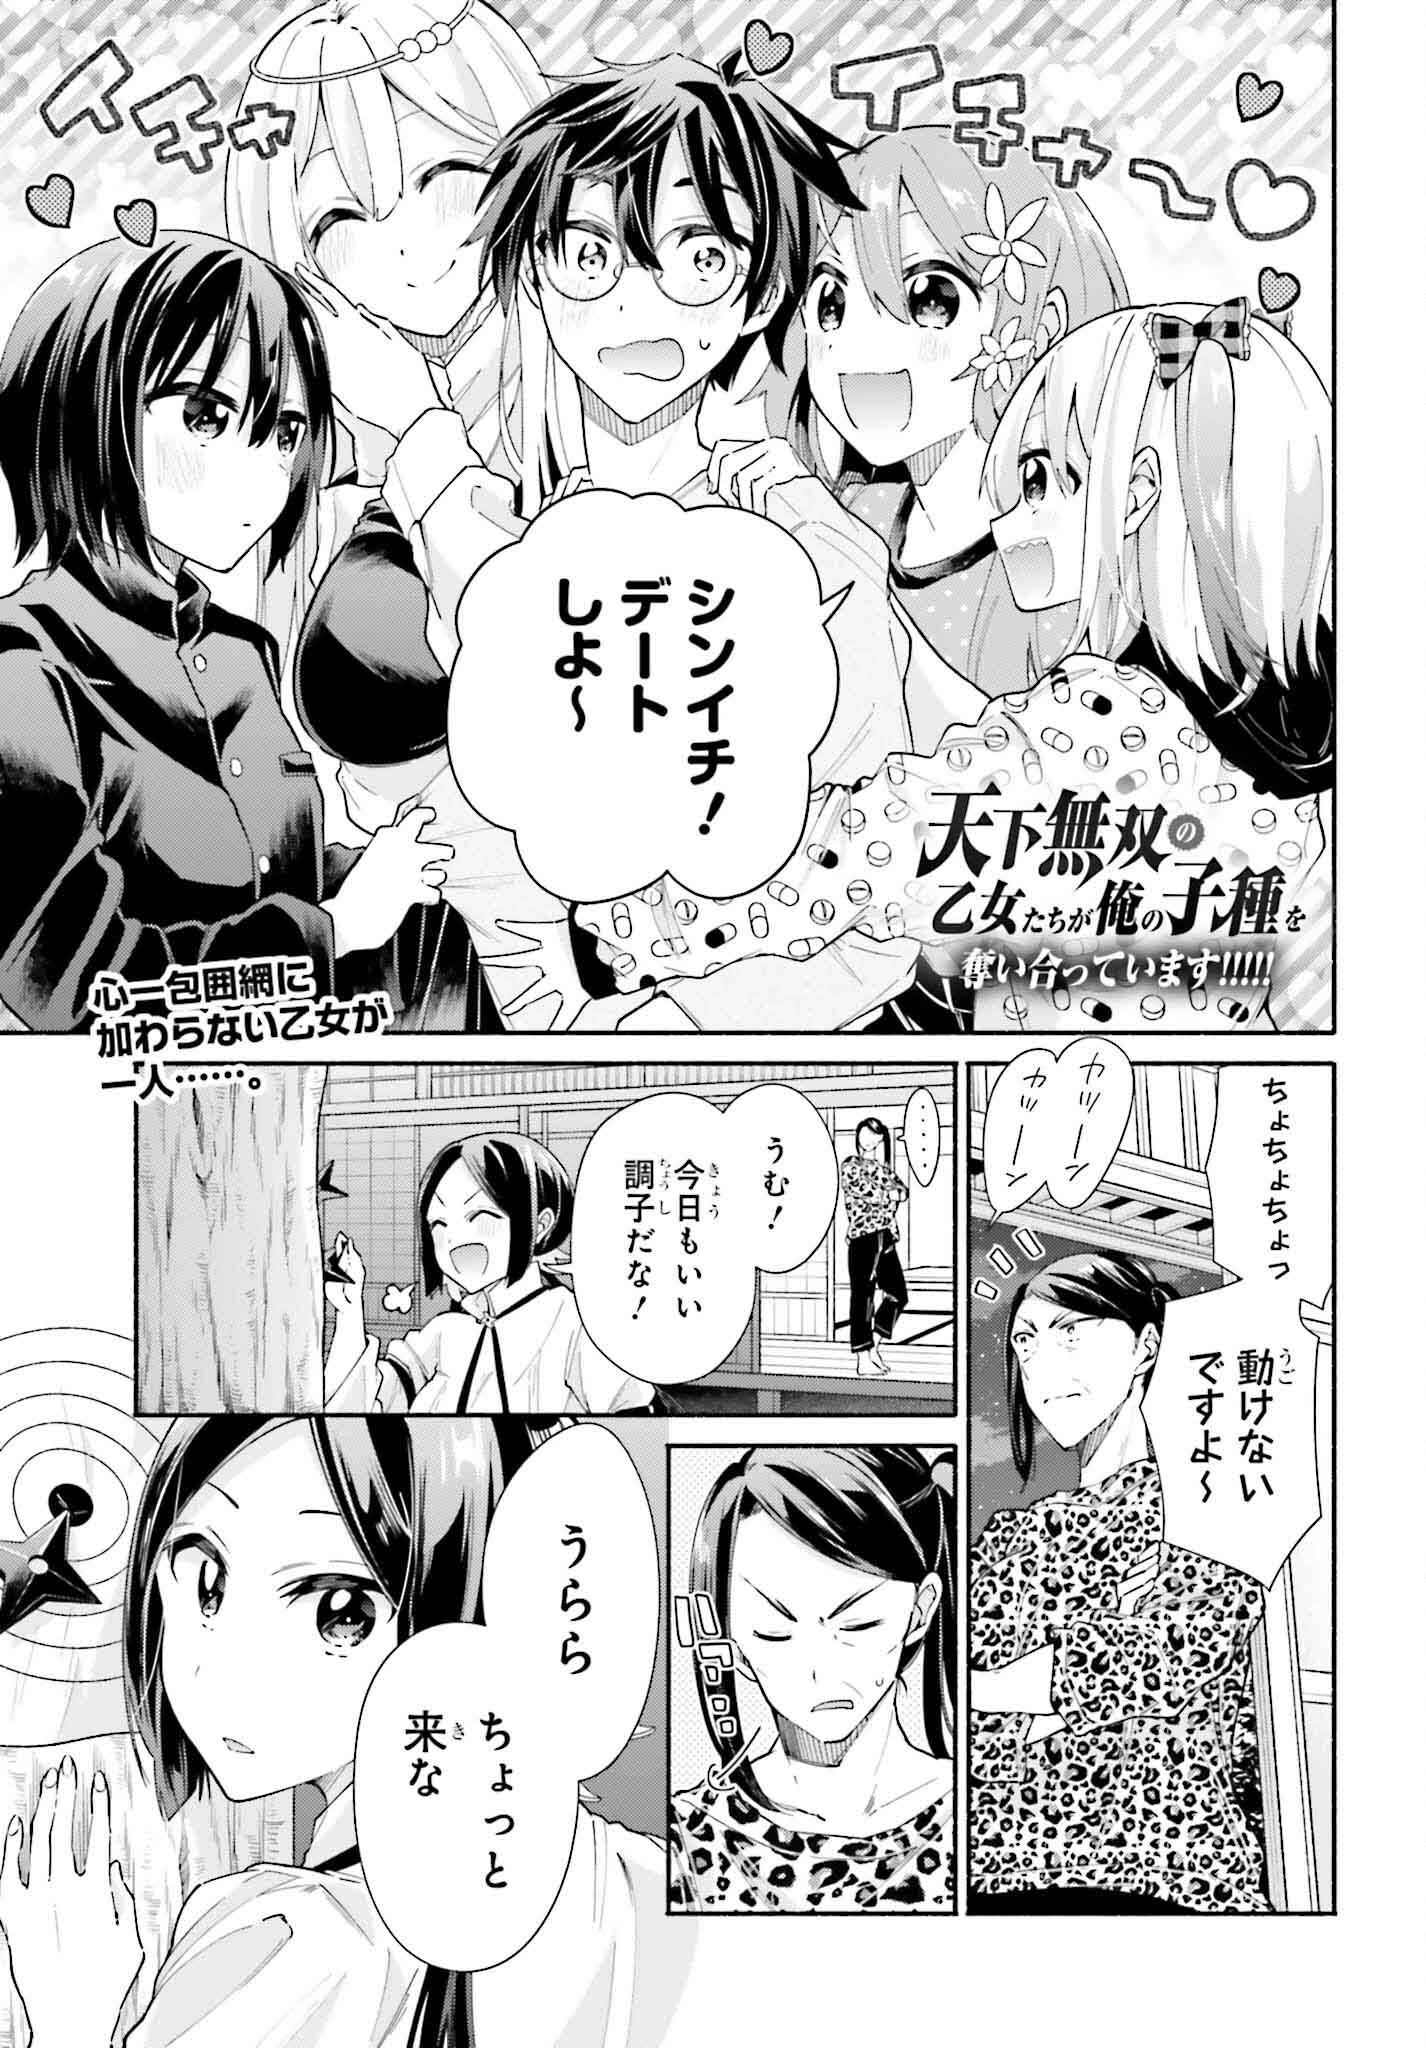 Tenka Musou no Otome-tachi ga Ore no Kodane wo Ubaiatteimasu!!!!! - Chapter 9 - Page 1